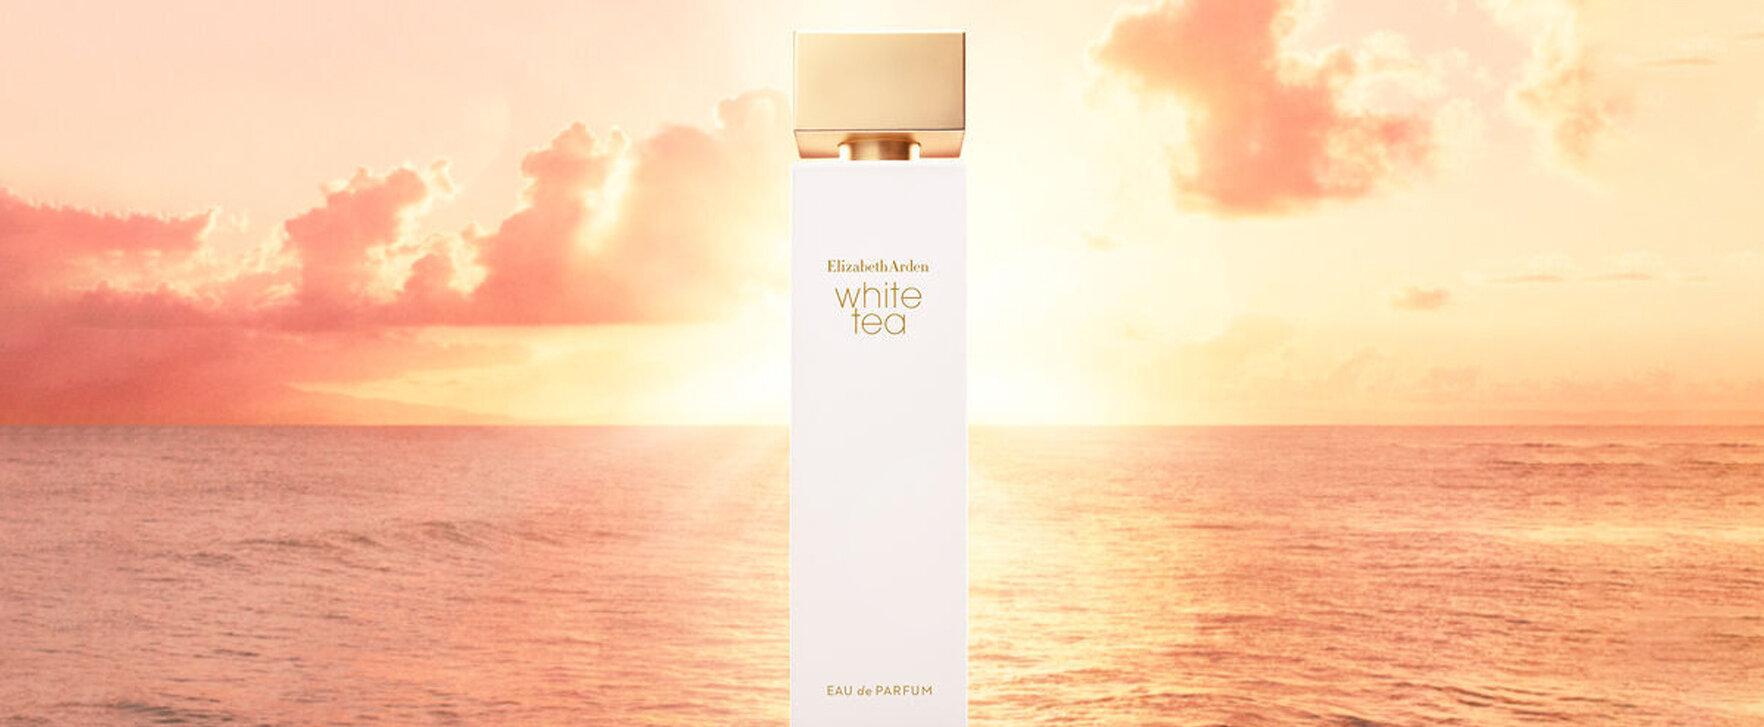 “White Tea (Eau de Parfum)” - Elisabeth Arden Presents More Intense Version of the Perfume